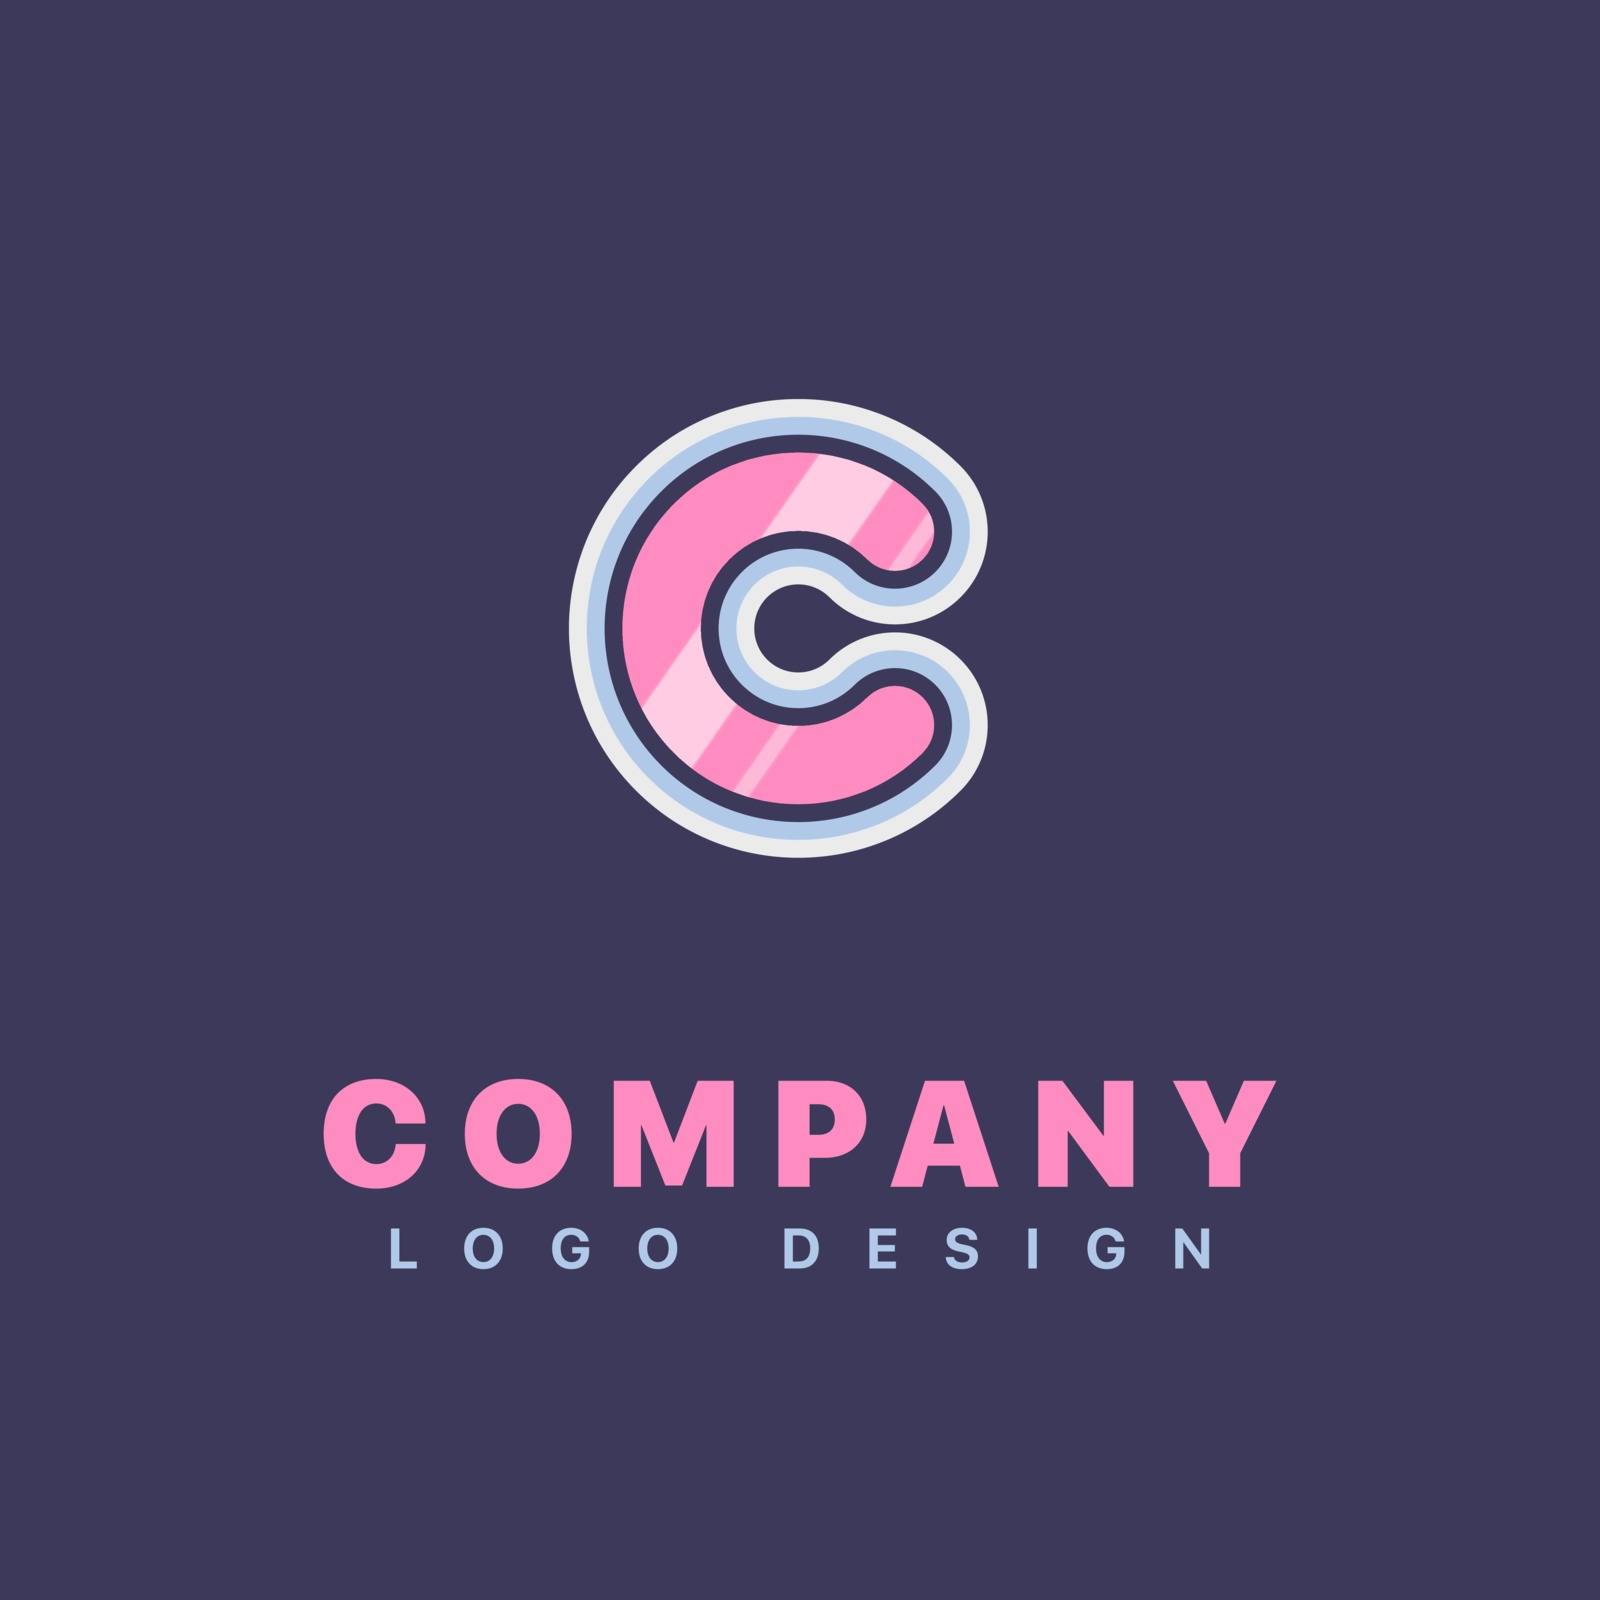 Letter C logo design template. Company logo icon